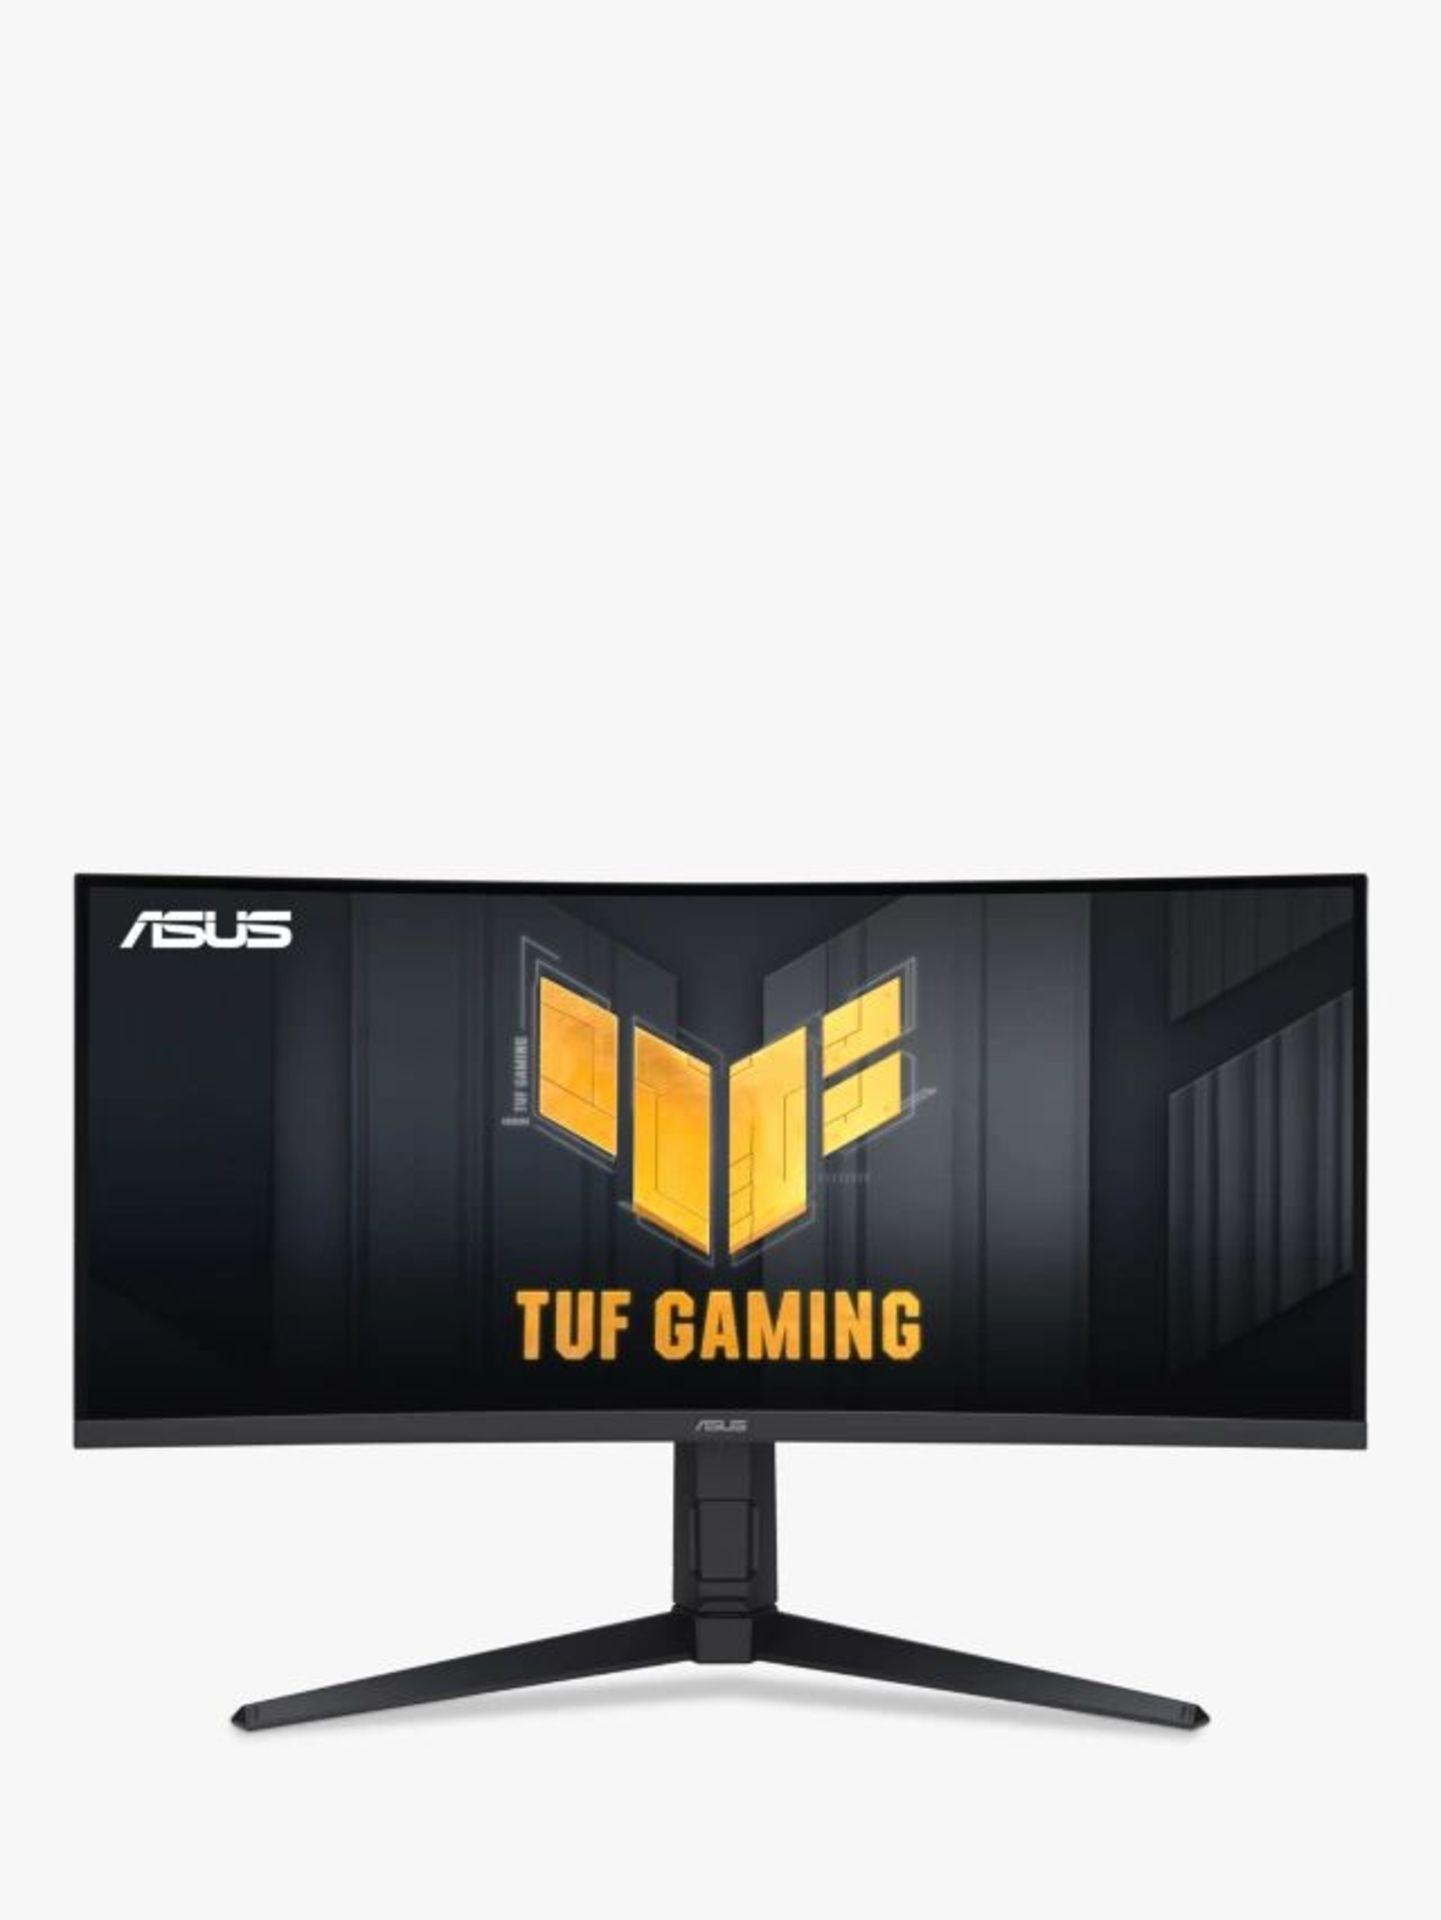 ASUS TUF Gaming VG34VQEL1A WQHD Curved HDR Gaming Monitor, 34", Black. - P1. RRP £579.00. No